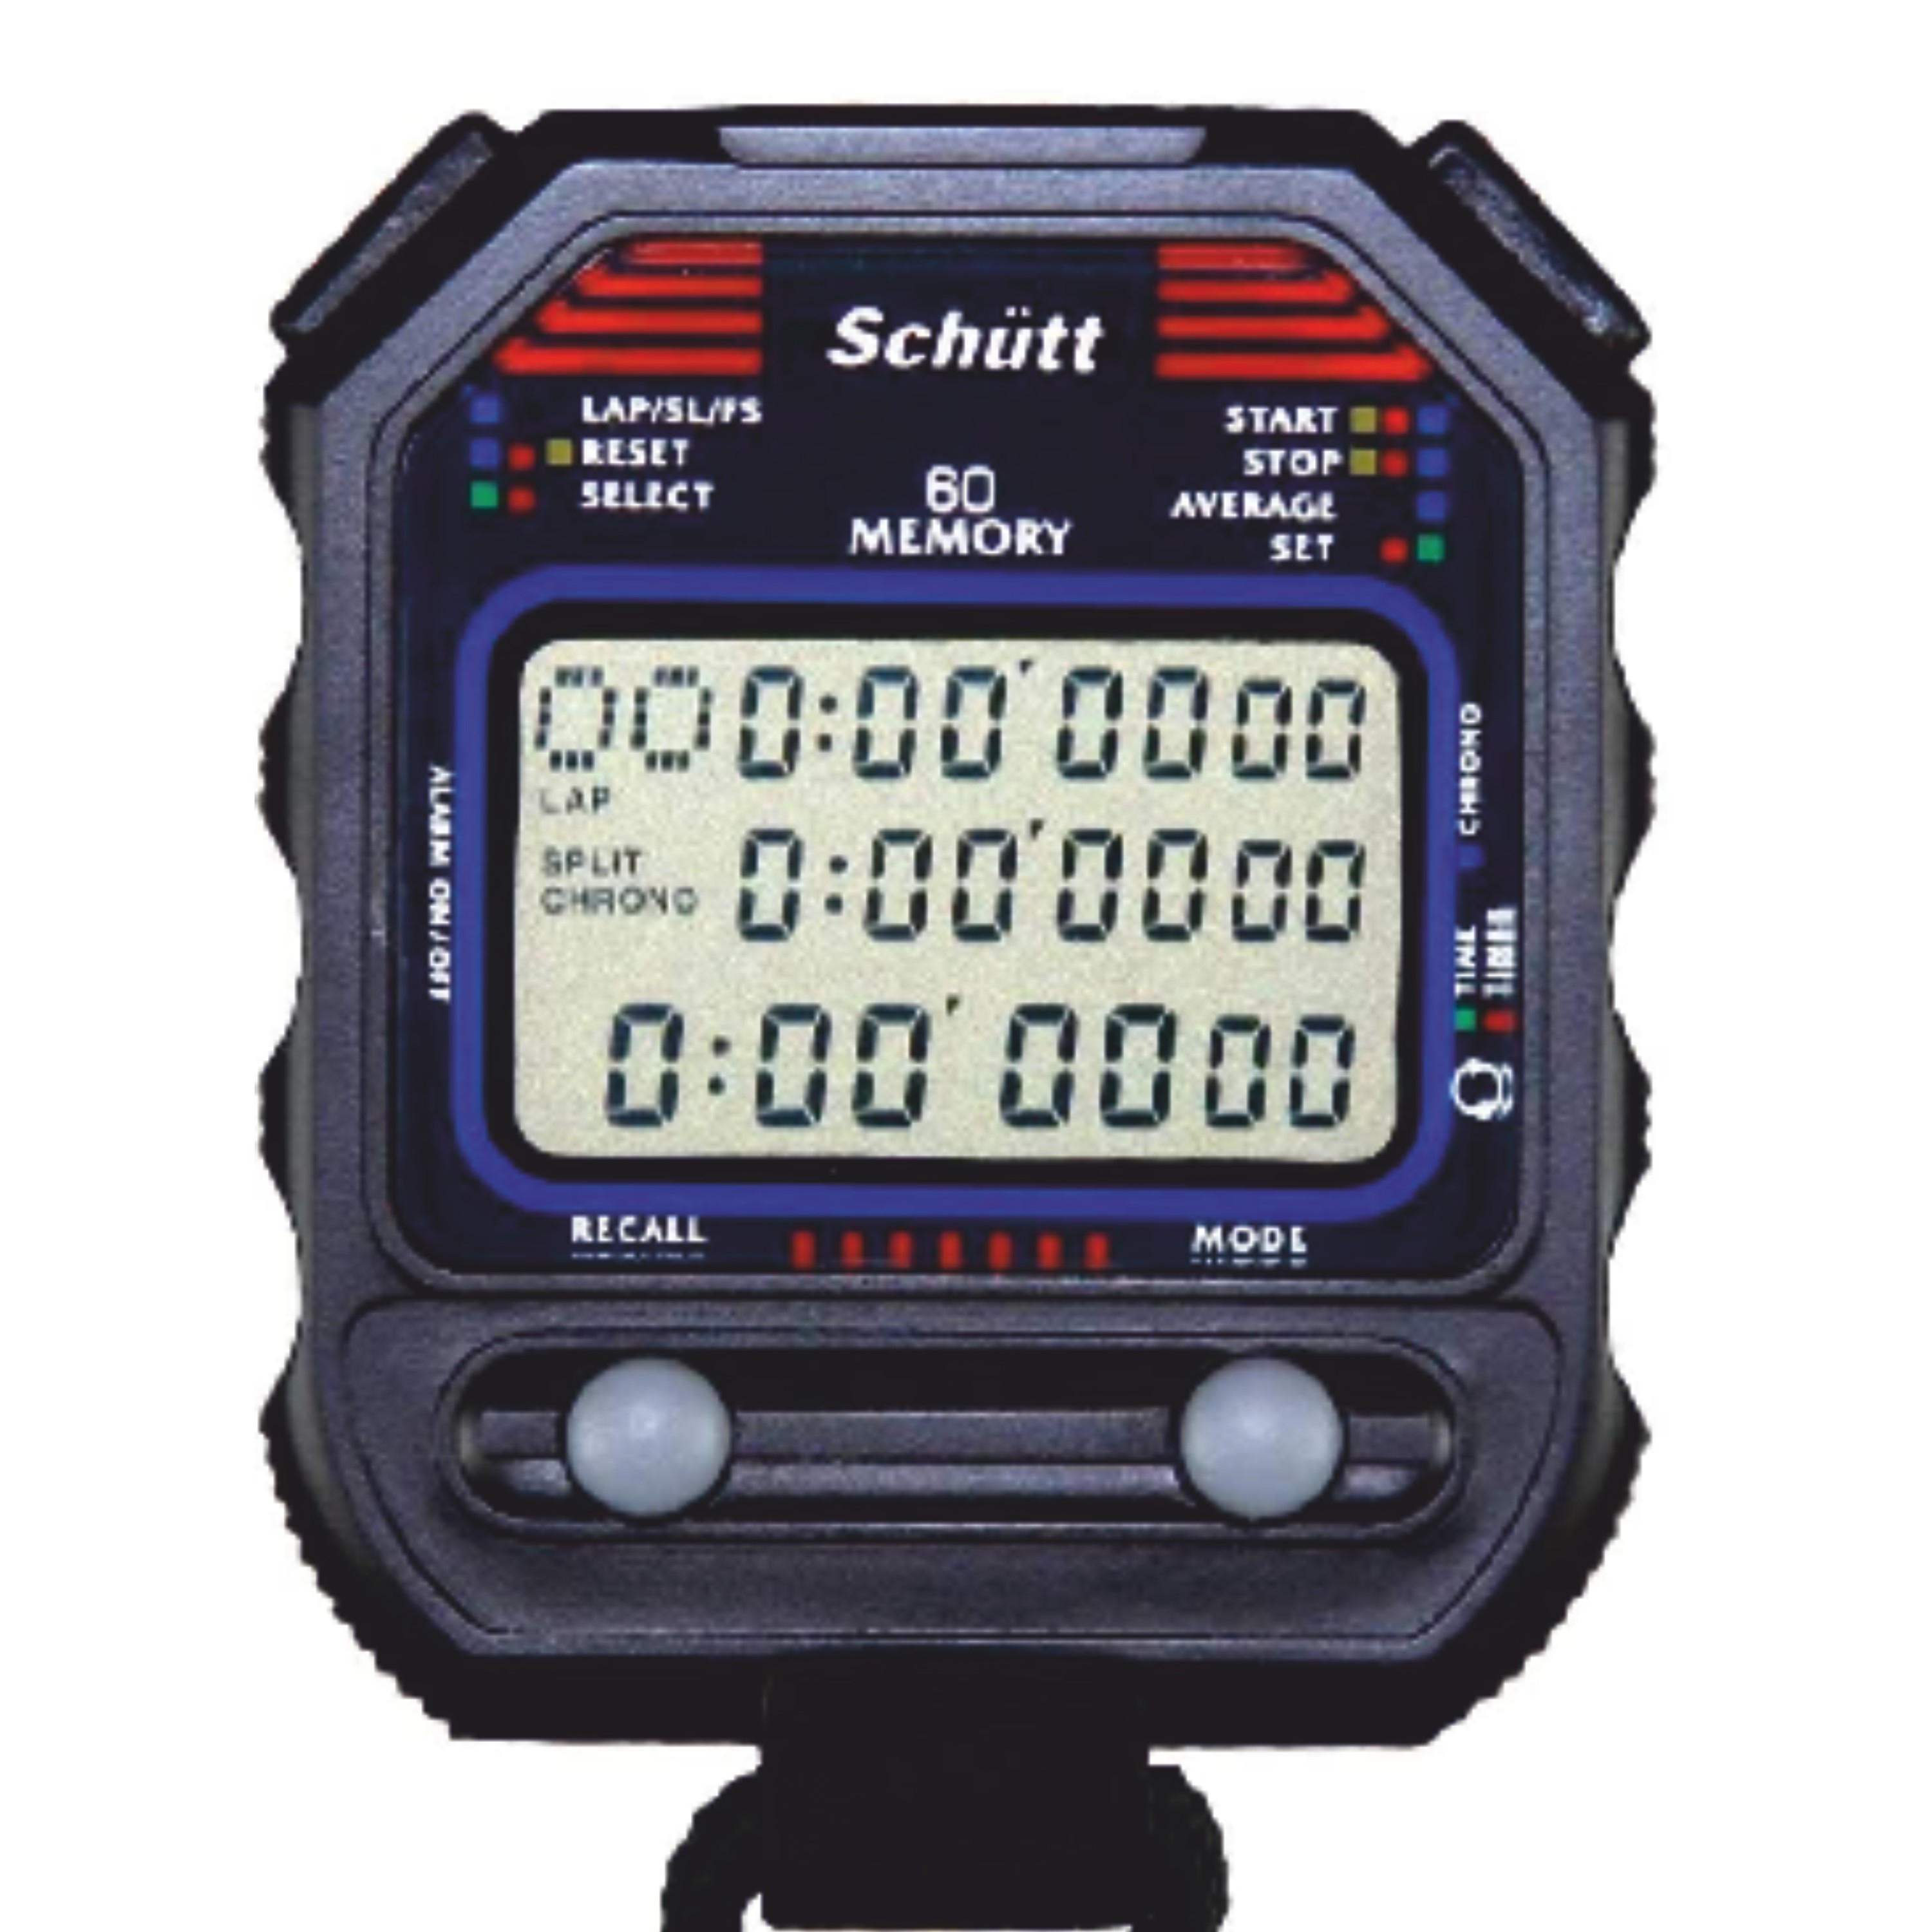 SCHÜTT Stoppuhr PC-90 (60 Memory) Schütt-Spezialversand für Sportartikel